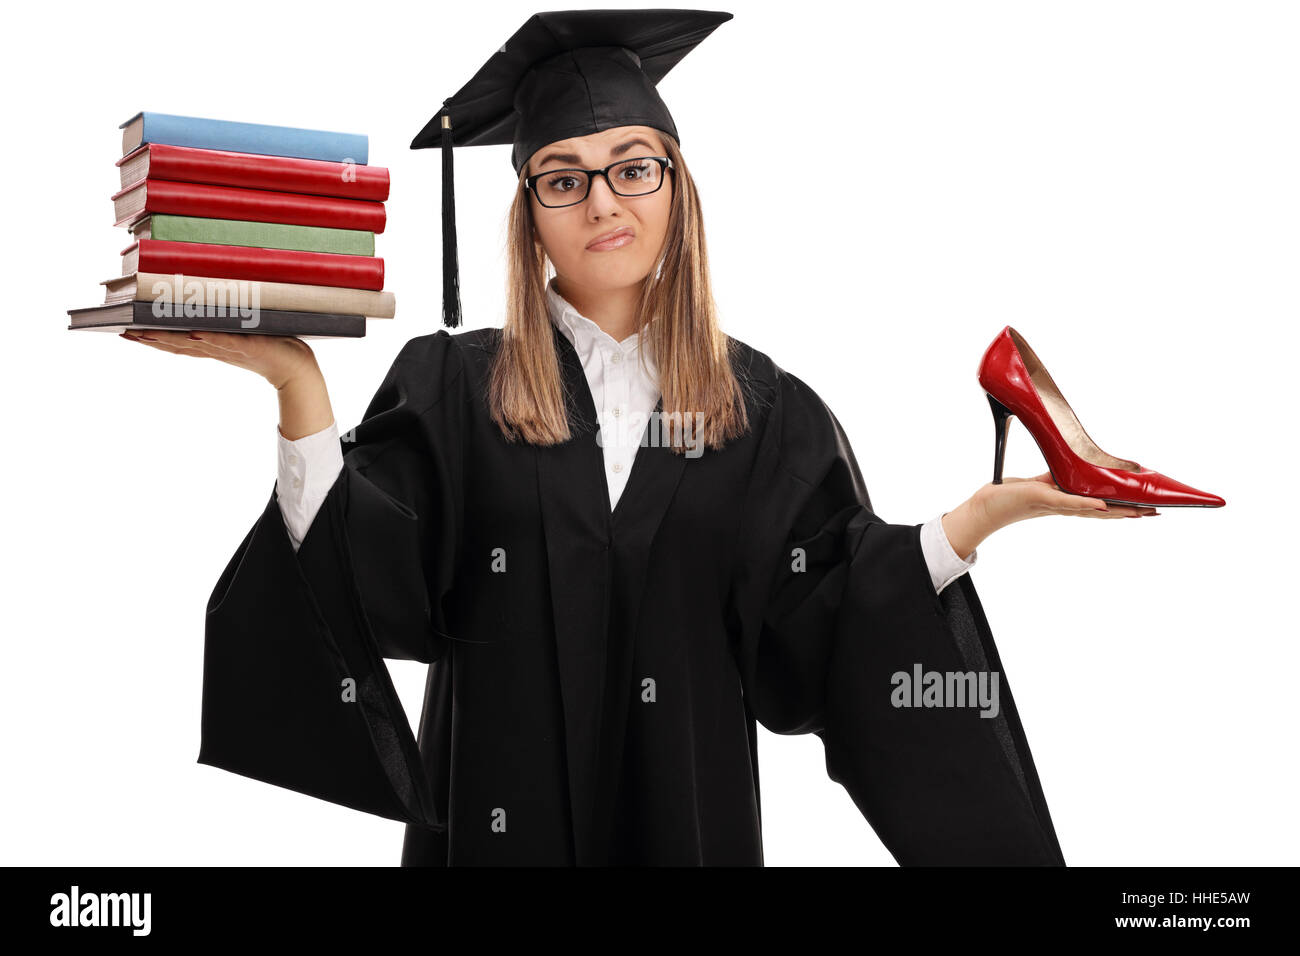 Unentschlossen Doktorand hält einen Stapel von Büchern und ein high Heel Schuh isoliert auf weißem Hintergrund Stockfoto